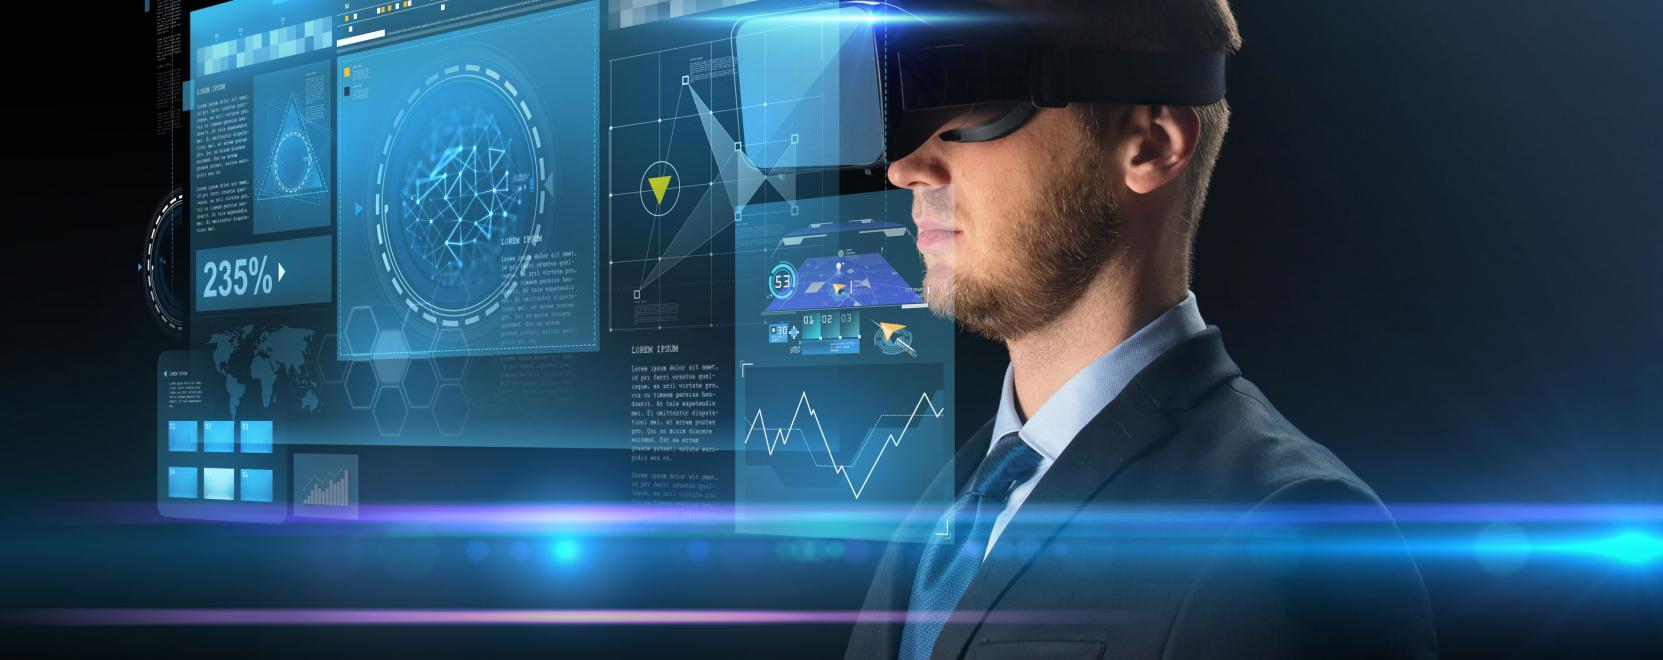 HoloLens 2: kevert valóság a vállalatoknak